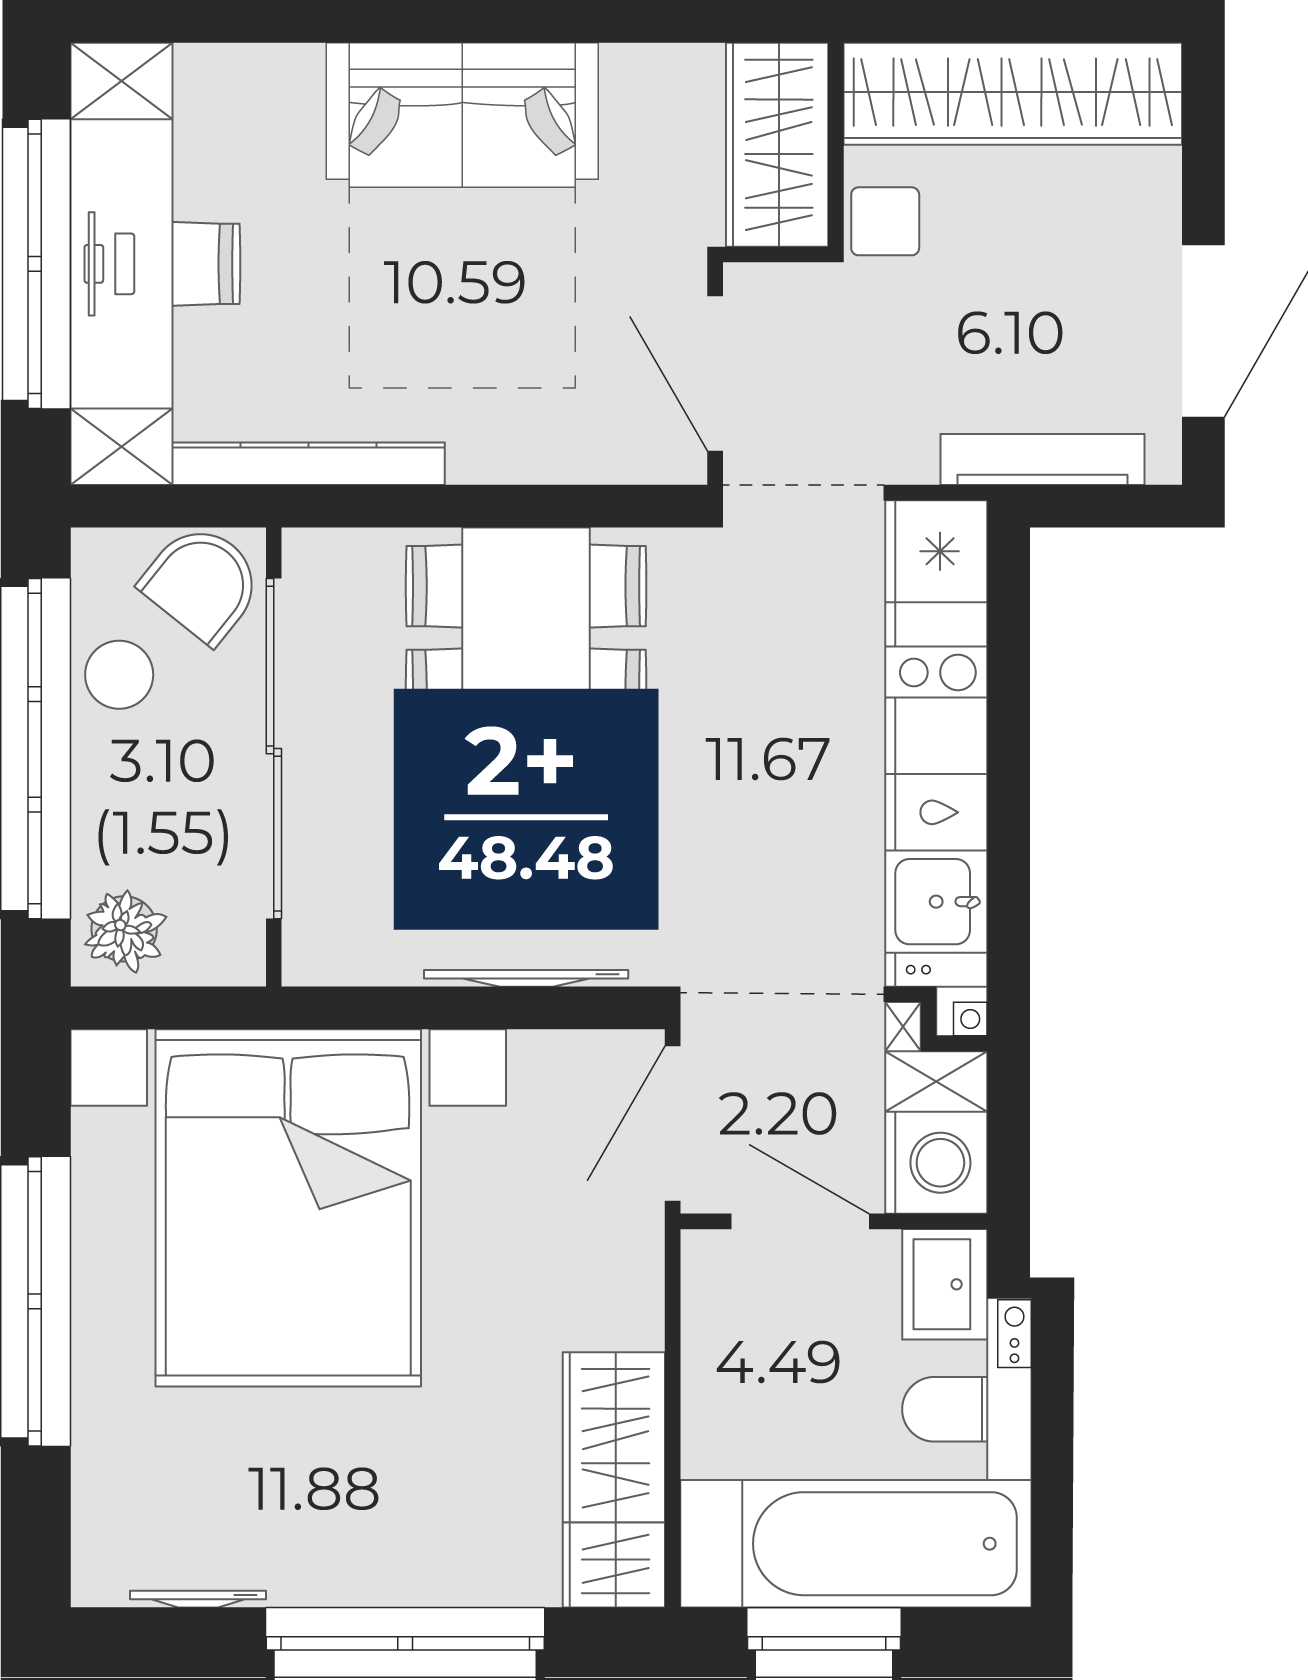 Квартира № 123, 2-комнатная, 48.48 кв. м, 14 этаж